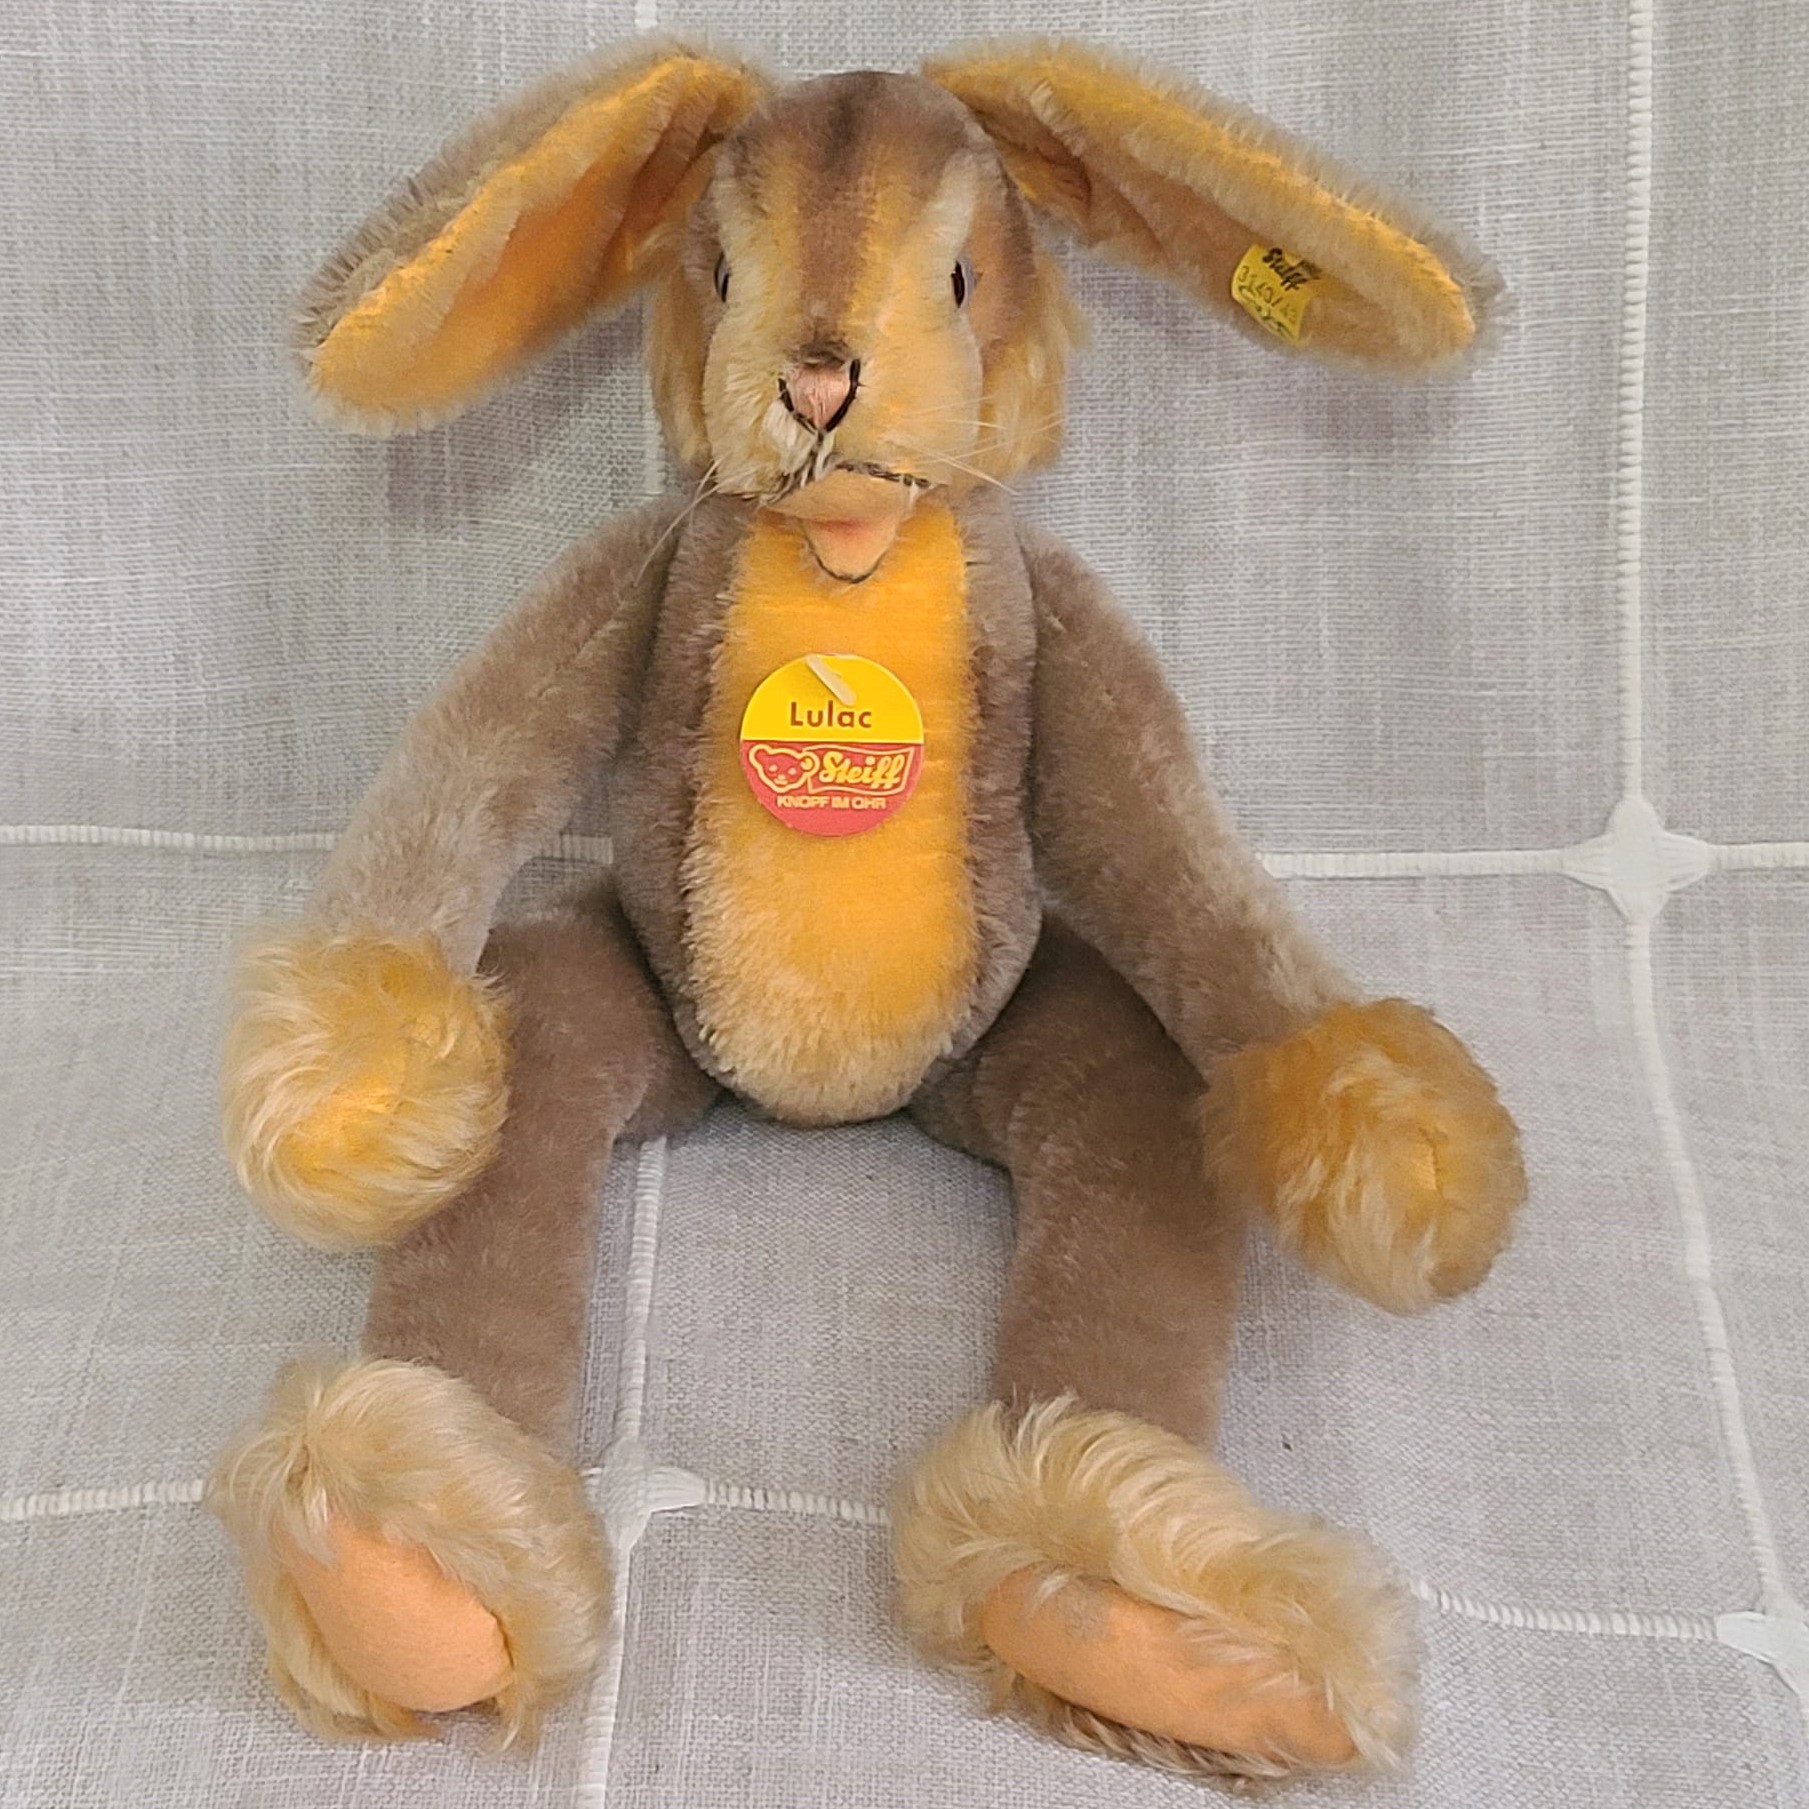 STEIFF Lulac mohair bunny rabbit 17" with tag